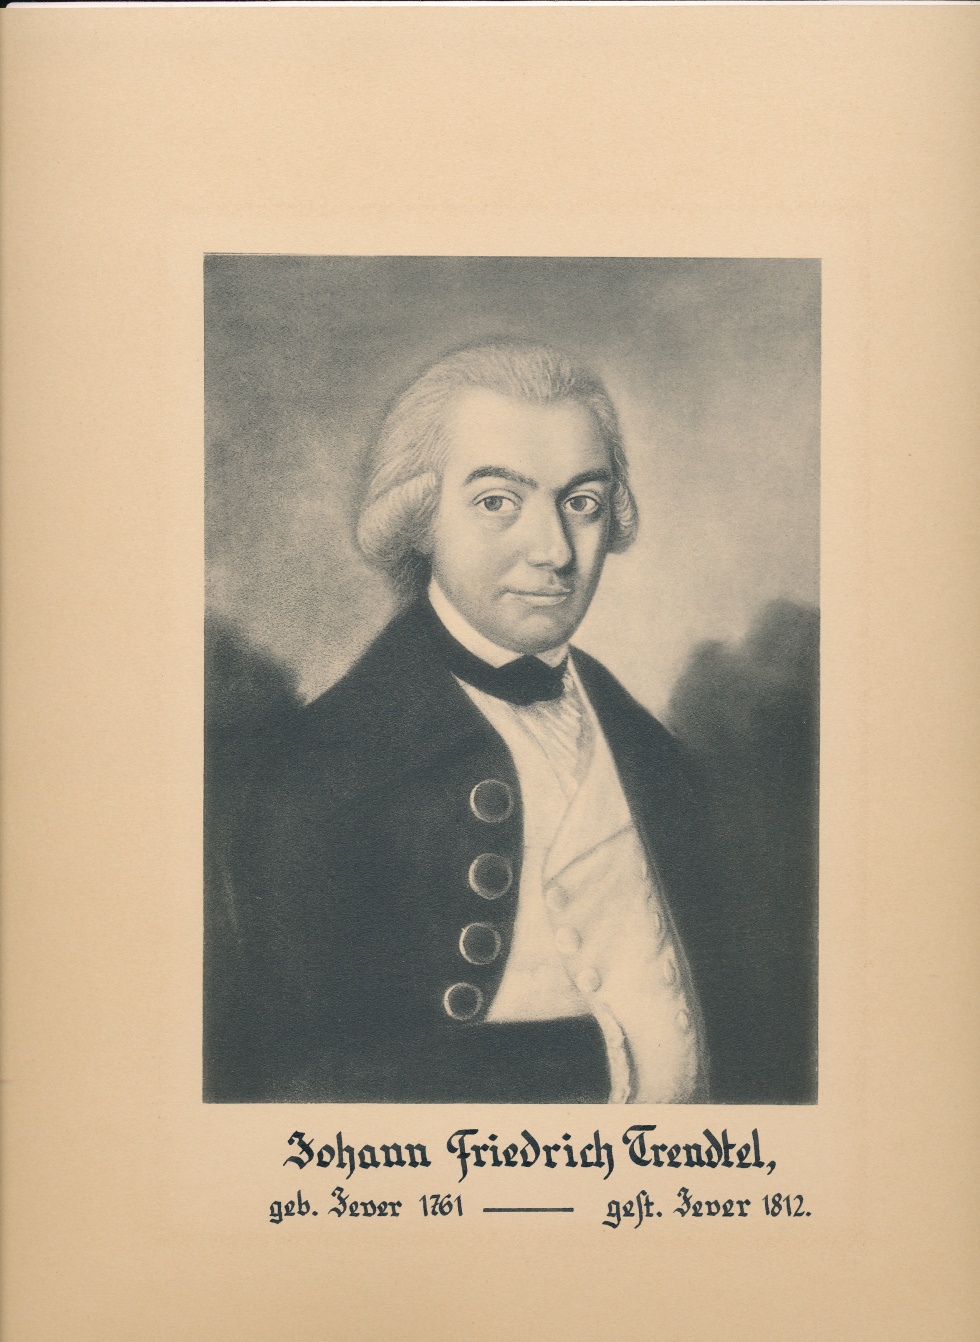 "Johann Friedrich Trendtel, geb. Jever 1761 - gest. Jever 1812." (Schlossmuseum Jever CC BY-NC-SA)